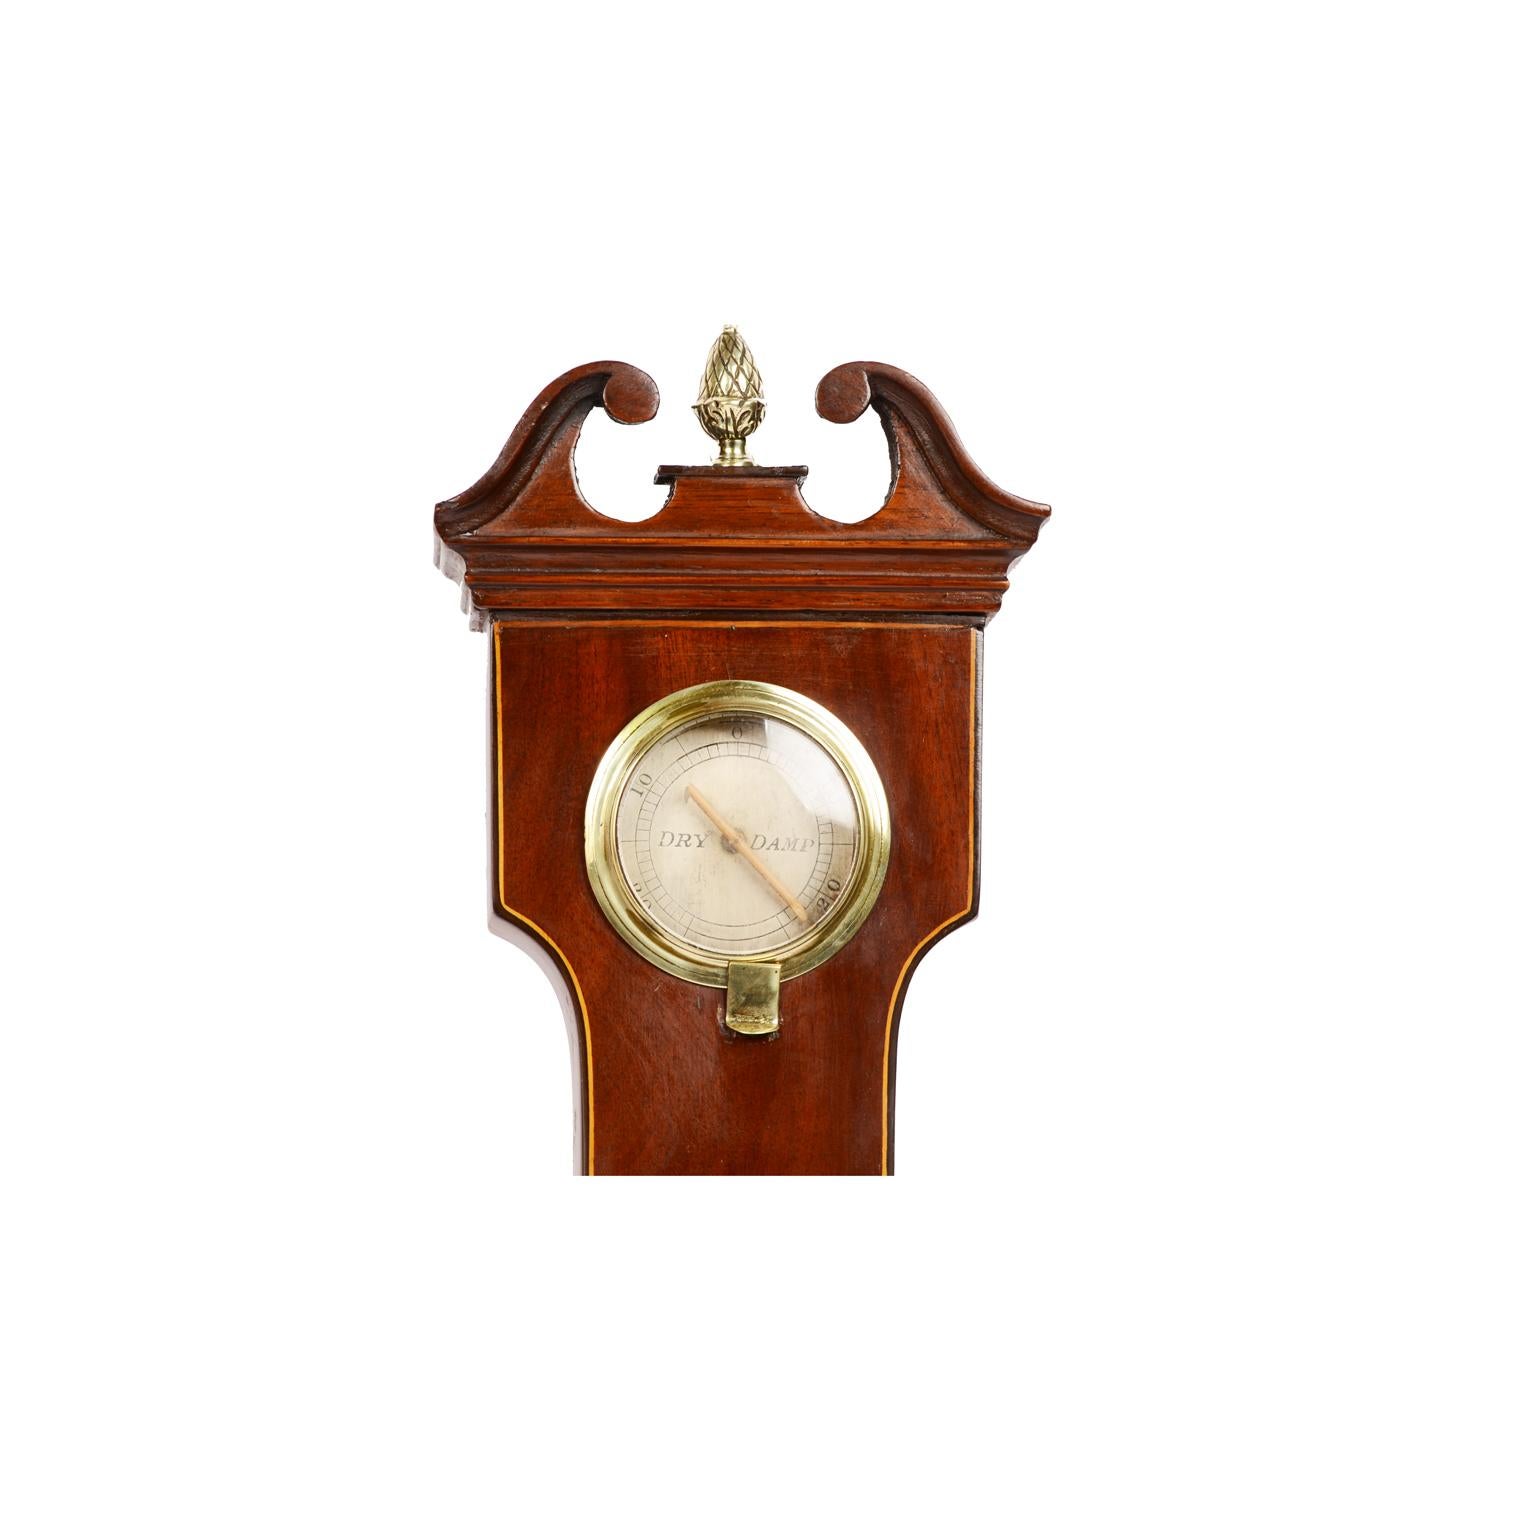 British 19th Century Antique Barometer Joseph Solcha Hull Antique Forecast Instrument